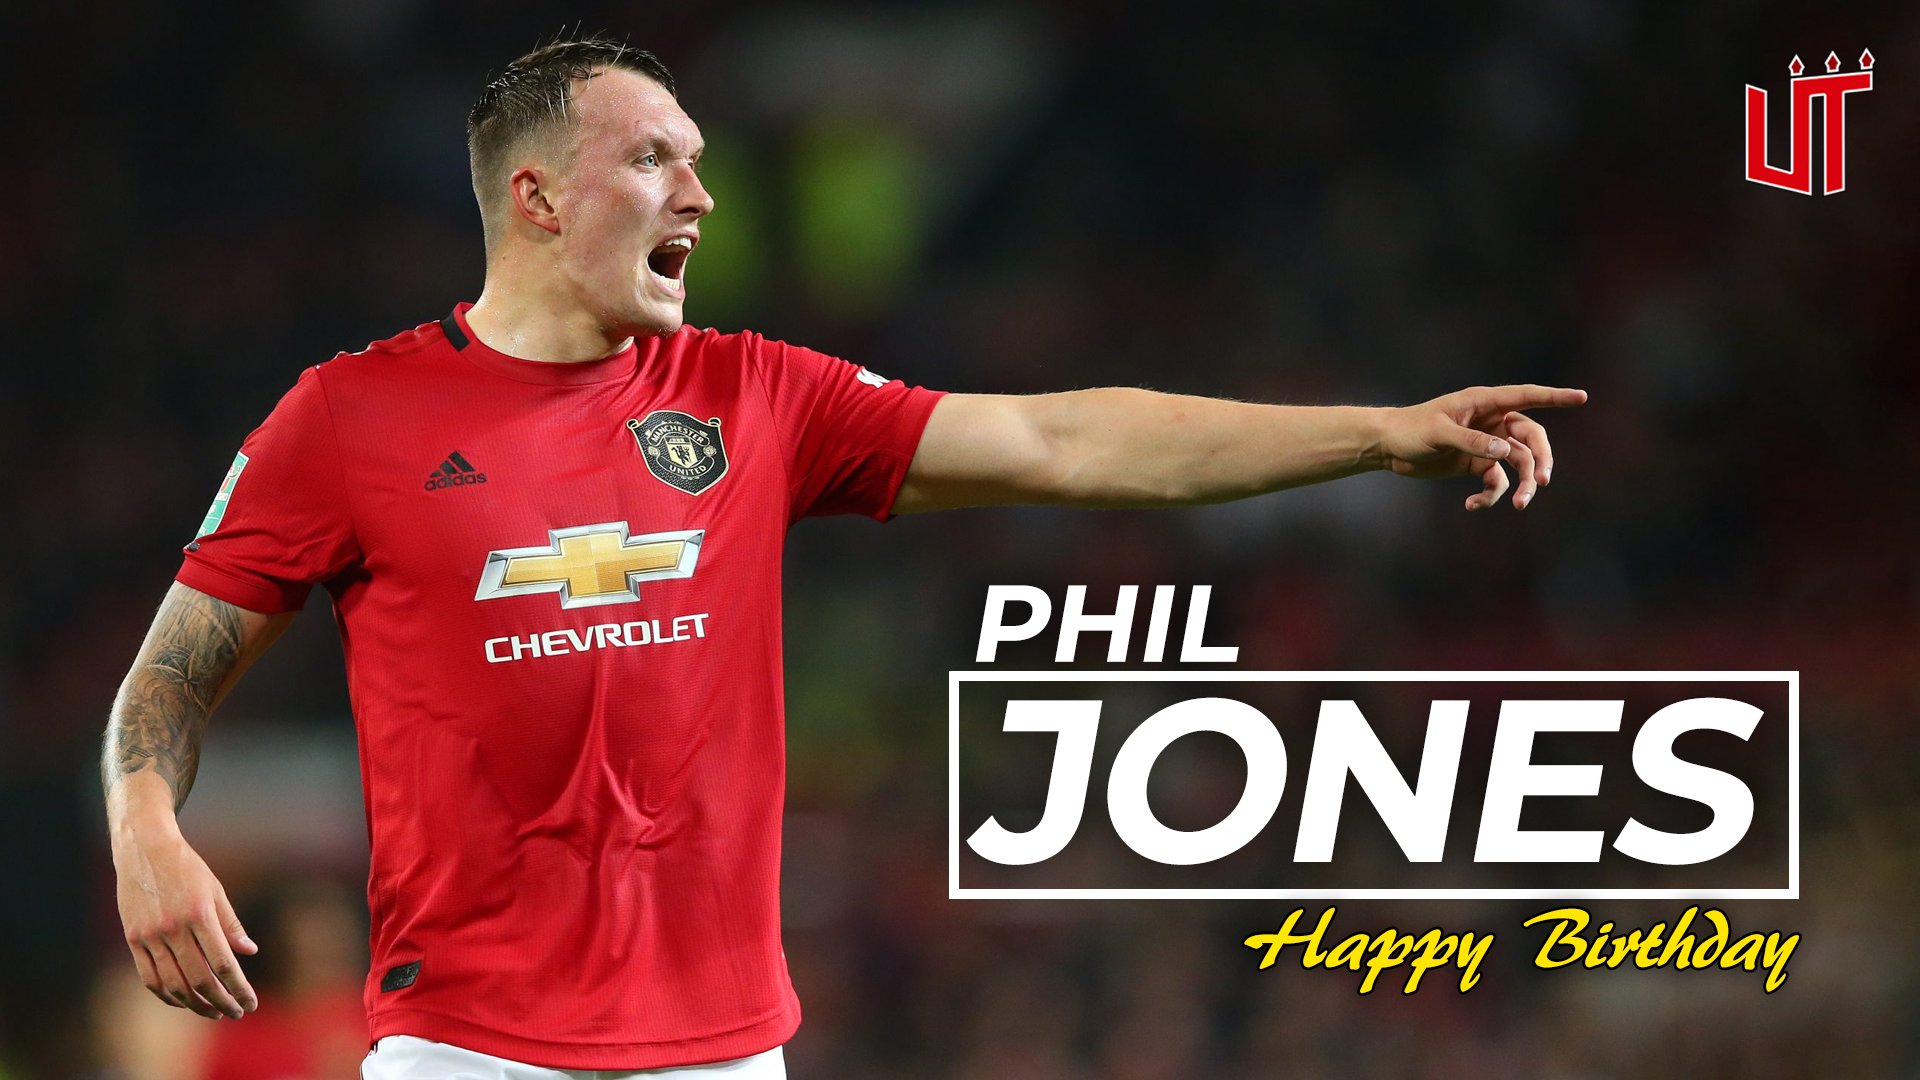 Happy birthday to Phil Jones who is 29 today!  